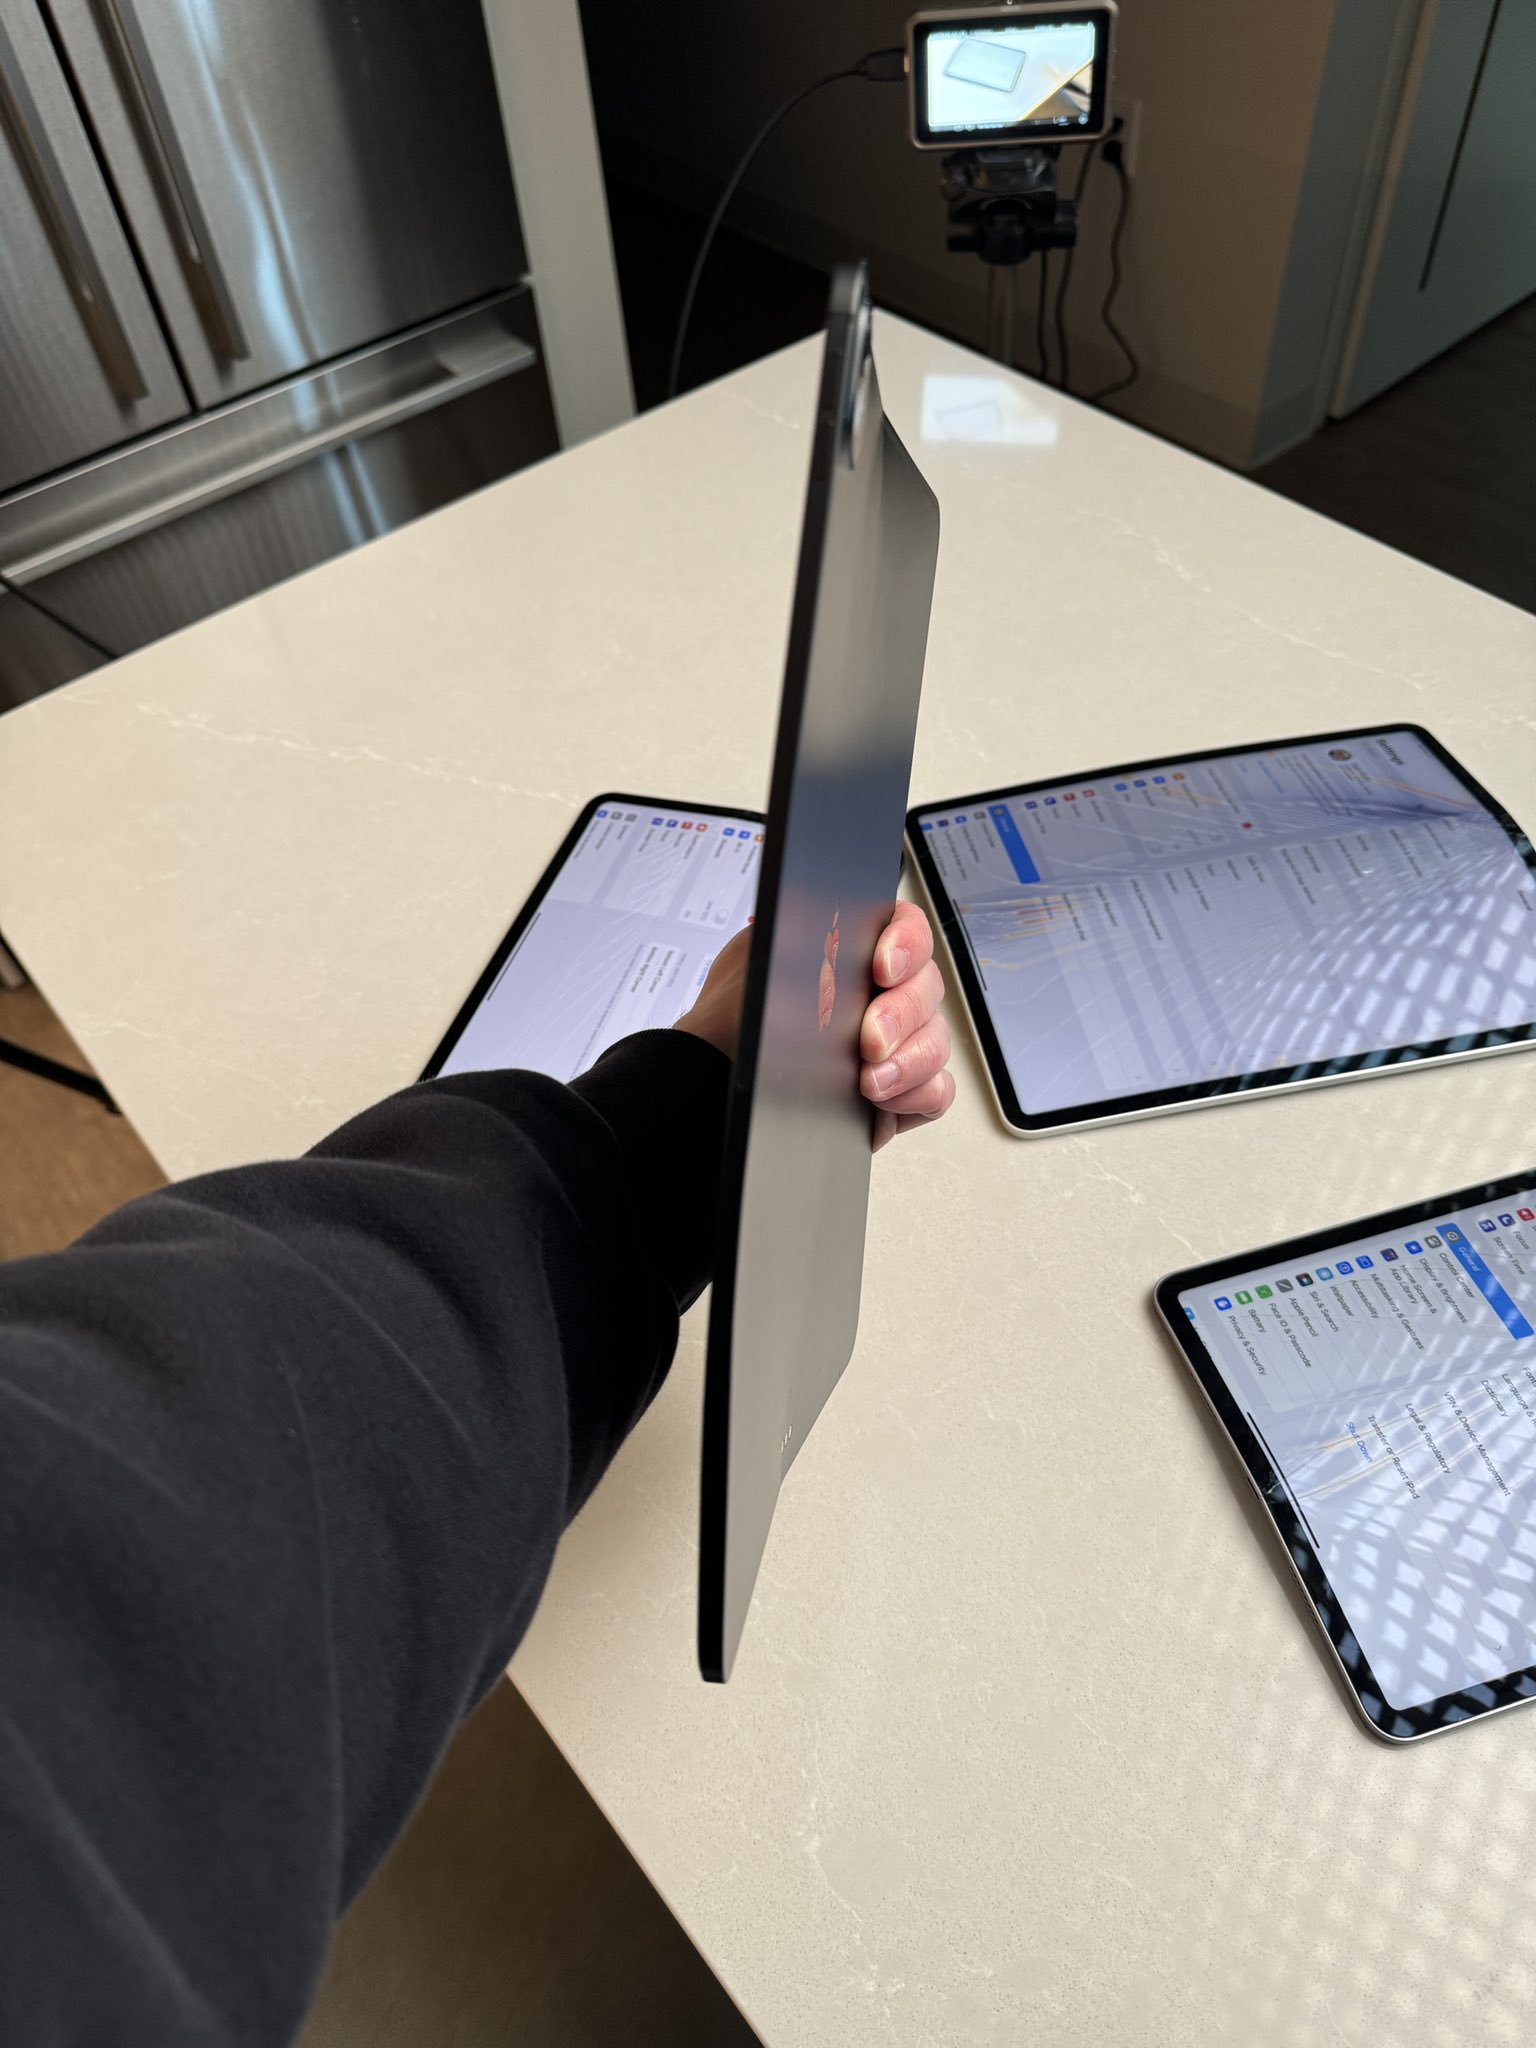 Новый тонкий iPad Pro уже проверили на прочность тестом на сгибание